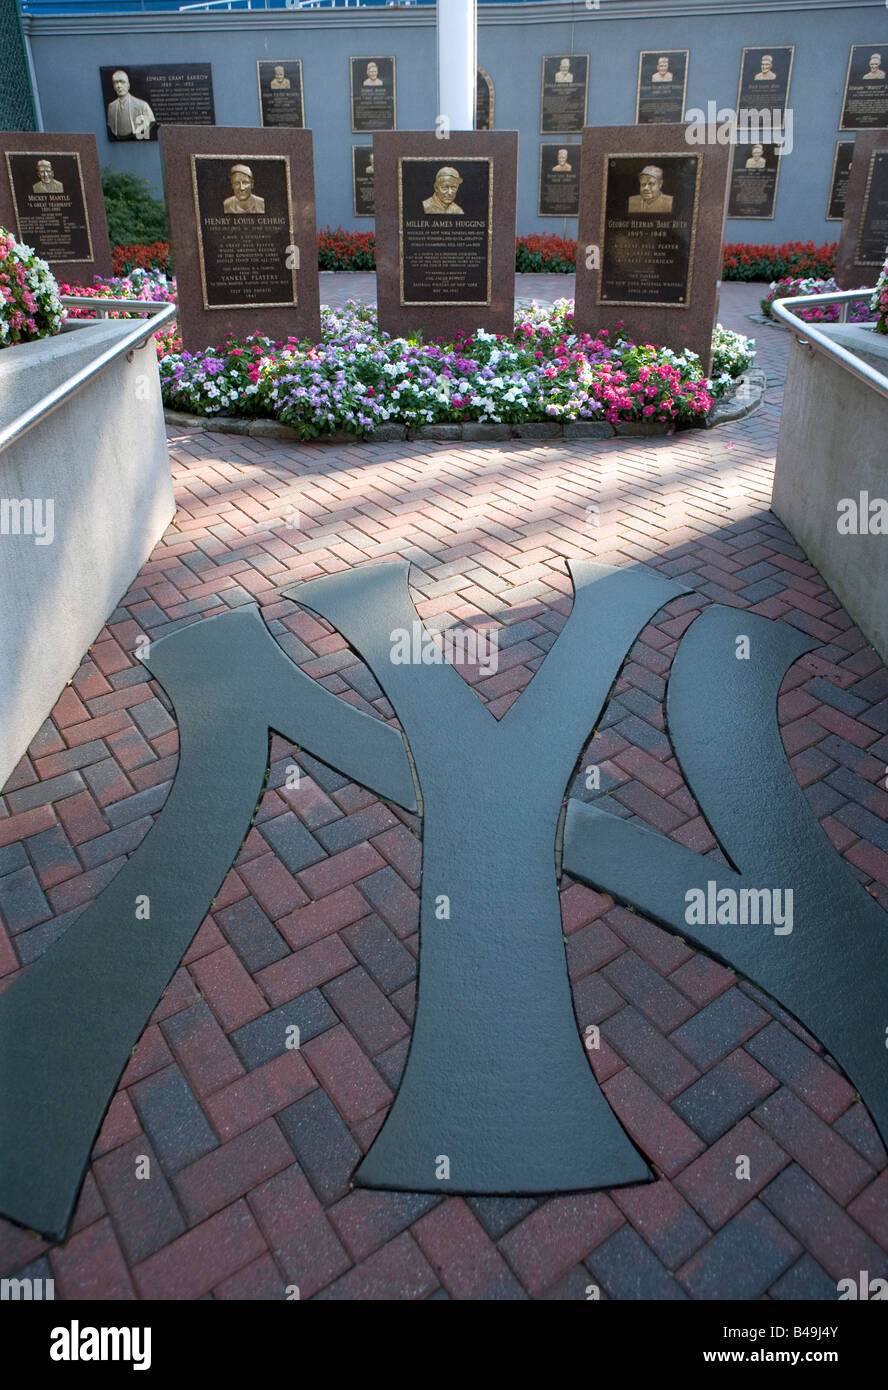 Il parco dei monumenti in Yankee Stadium i quattro monumenti più vicini raffigurano Lou Gehrig Mickey mantello Miller Huggins e Babe Ruth Foto Stock